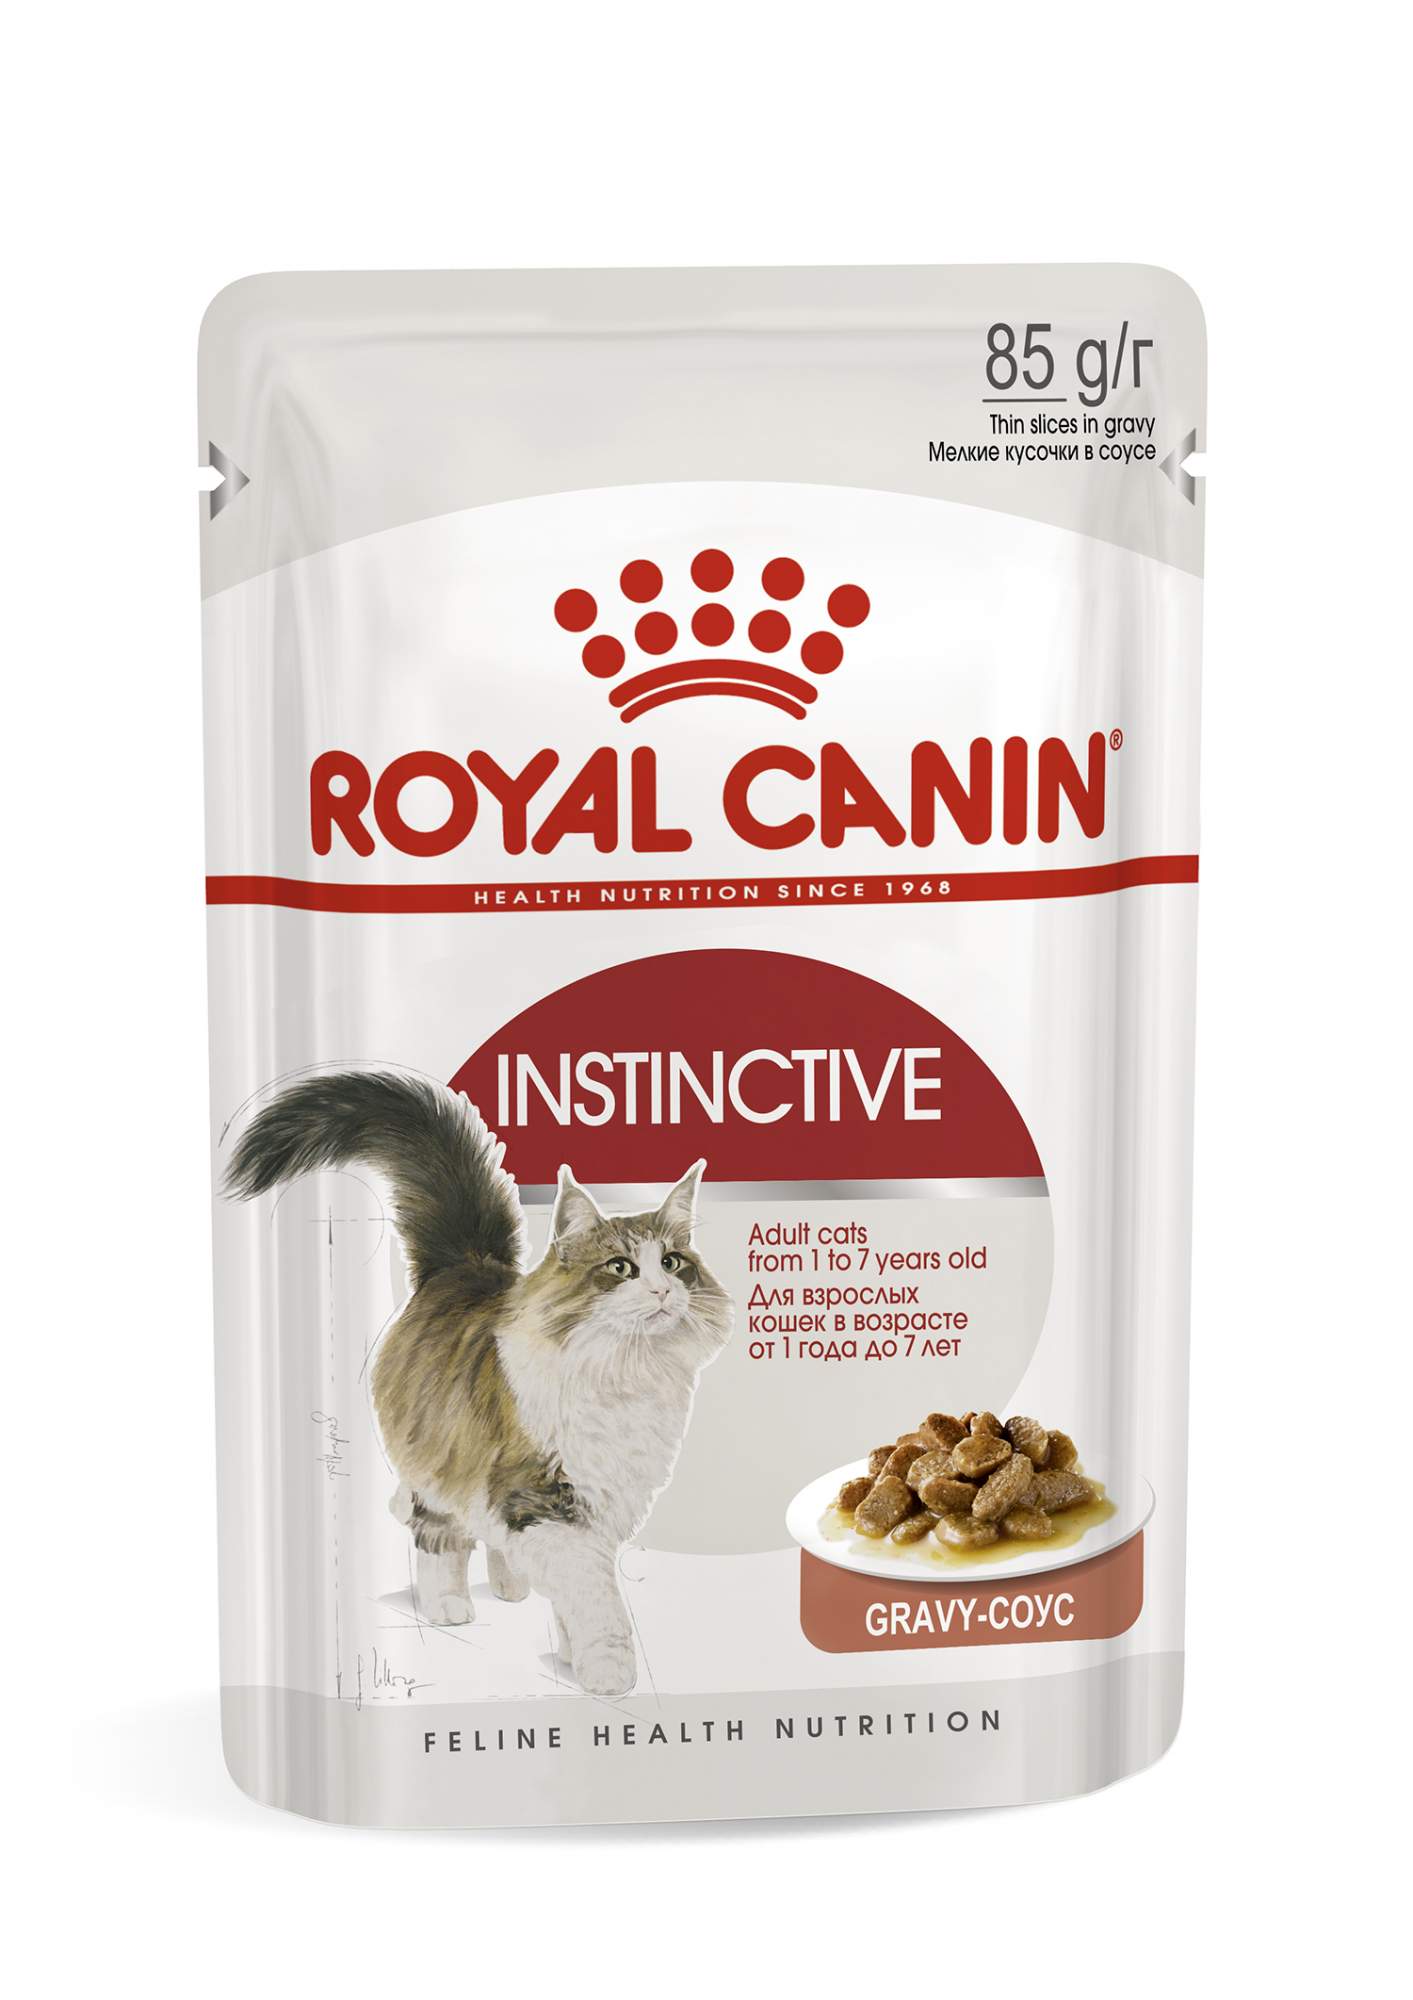 Купить влажный корм для кошек ROYAL CANIN Instinctive, соус, 24шт по 85г, цены на Мегамаркет | Артикул: 100026632193